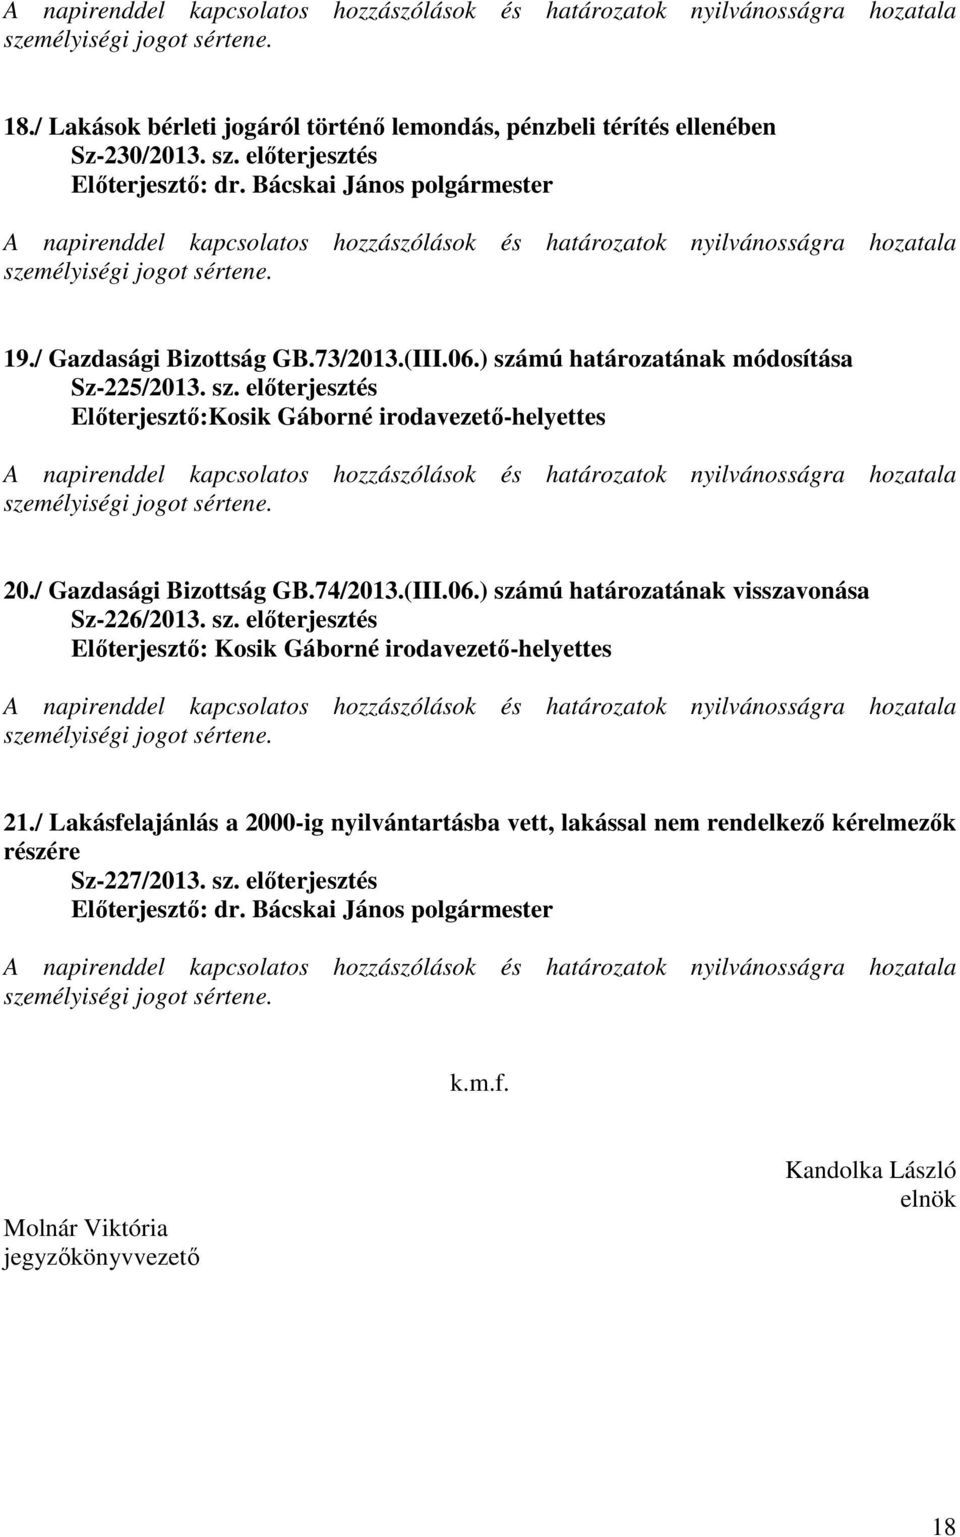 ) számú határozatának módosítása Sz-225/2013. sz. előterjesztés Előterjesztő:Kosik Gáborné irodavezető-helyettes mélyiségi jogot sértene. 20./ Gazdasági Bizottság GB.74/2013.(III.06.